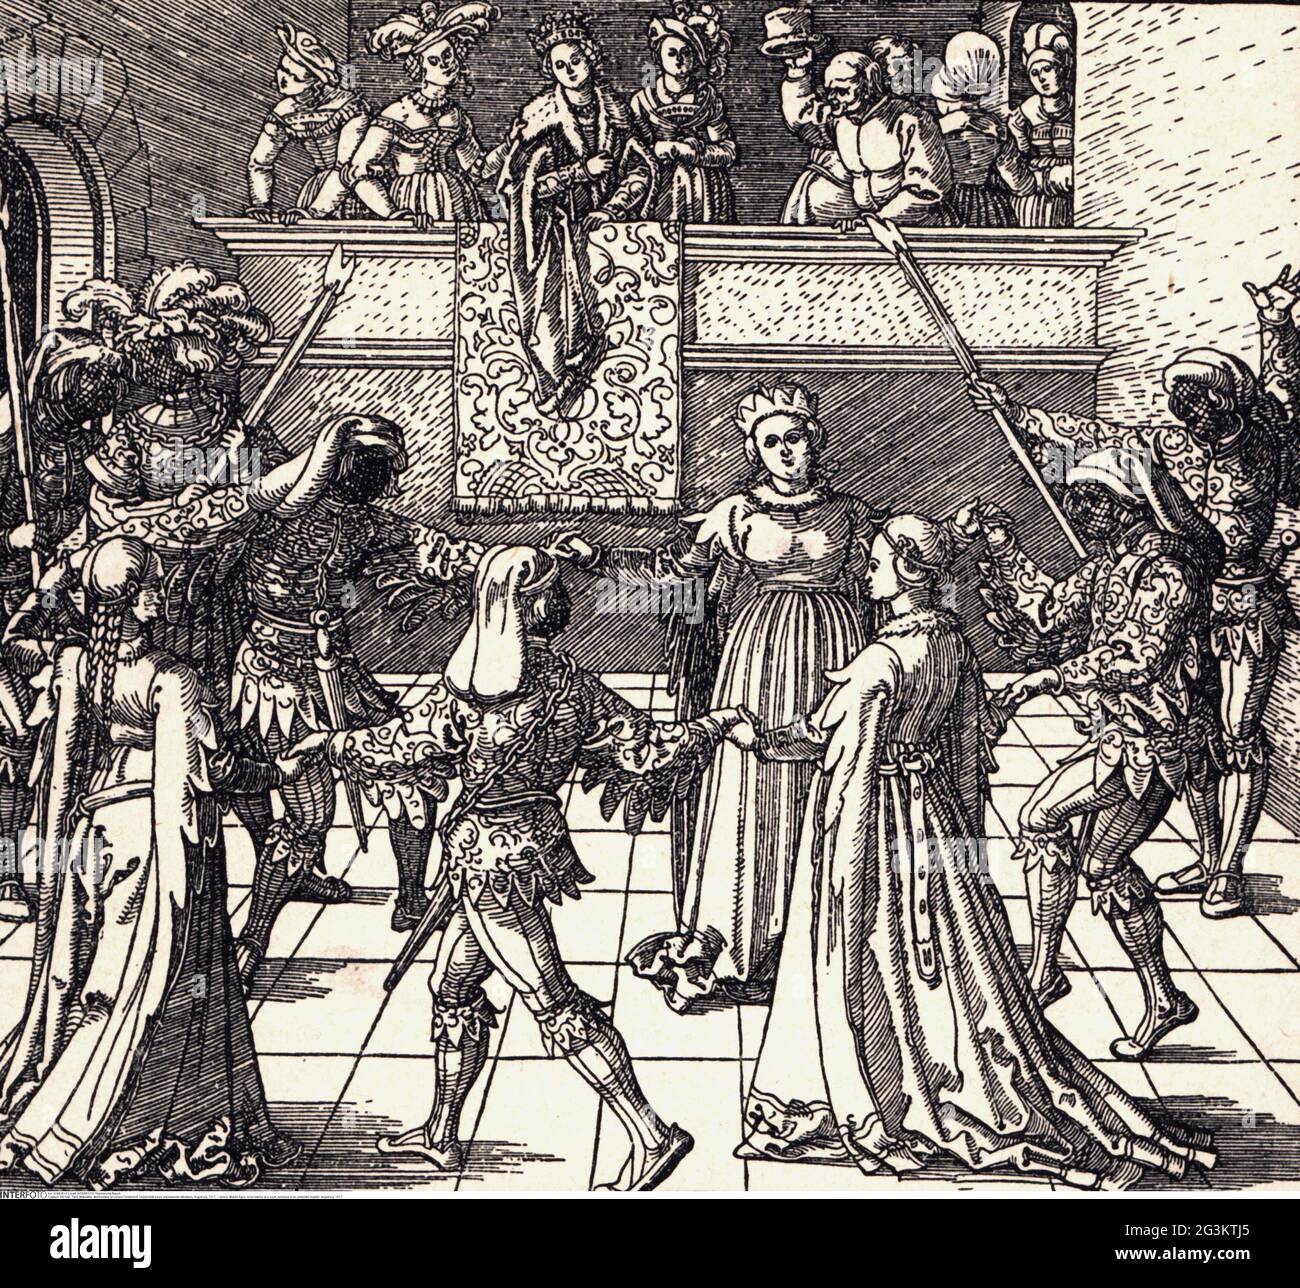 Danse, Moyen âge, danse de lande à un tribunal, coupe de bois d'un maître inconnu, Augsburg, 1517, LE DROIT D'AUTEUR DE L'ARTISTE N'A PAS À ÊTRE AUTORISÉ Banque D'Images